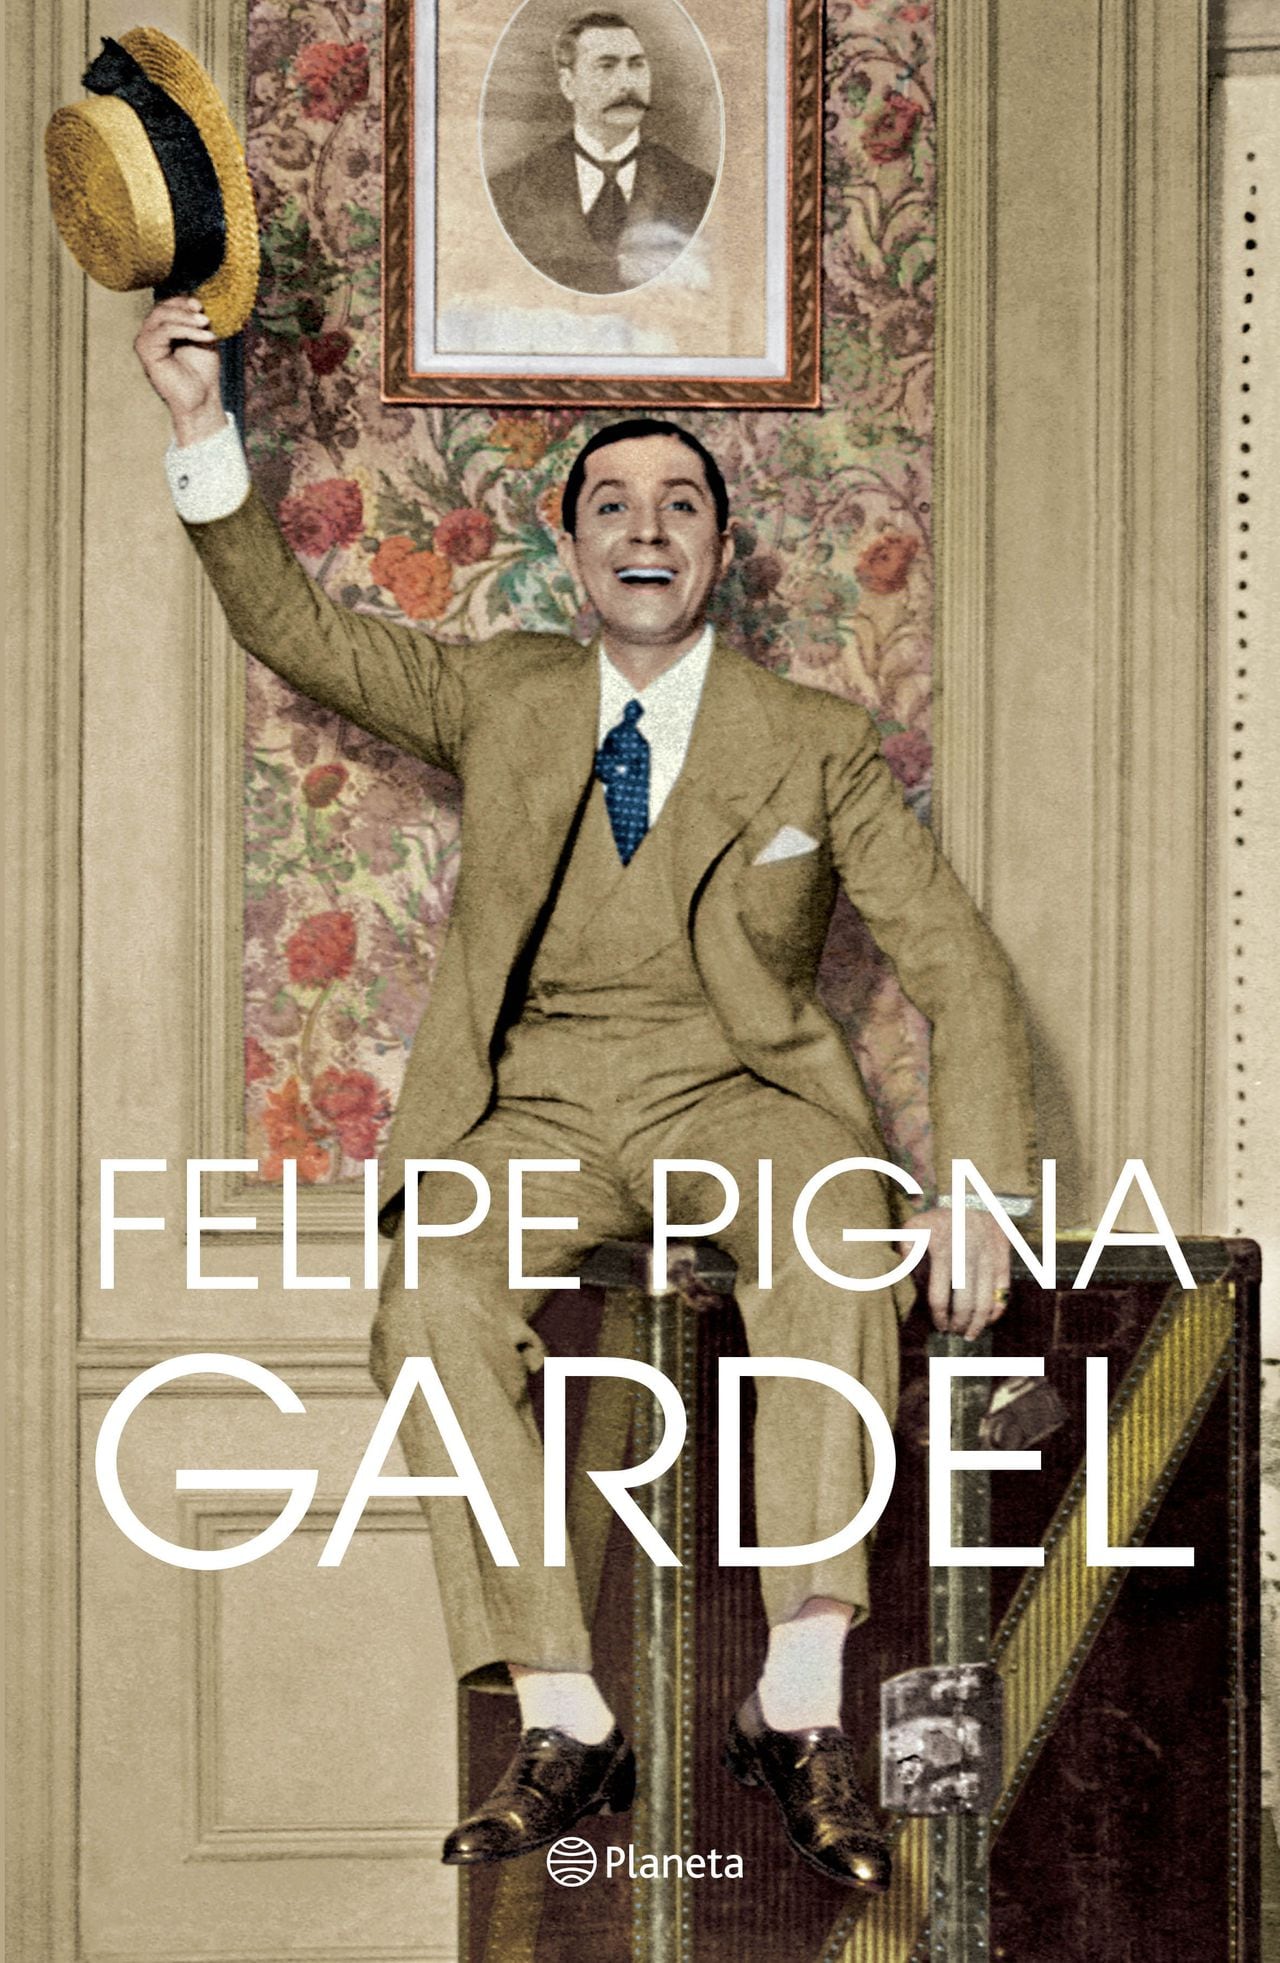 Portada de "Gardel" de Felipe Pigna. Cortesía de Editorial Planeta.